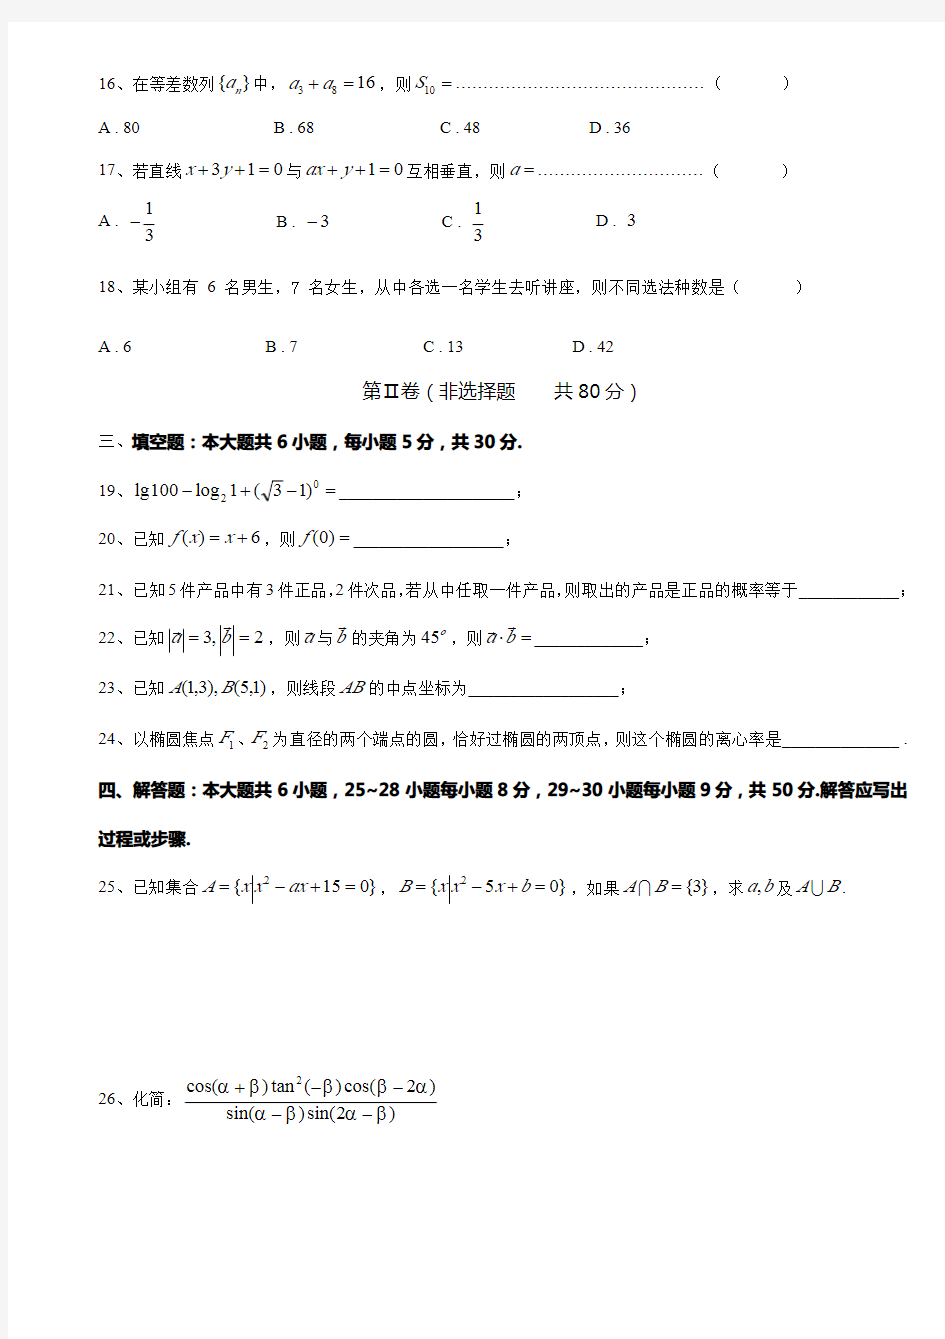 【中职数学】精品 2020年三校生高考模拟考试数学试卷(三)